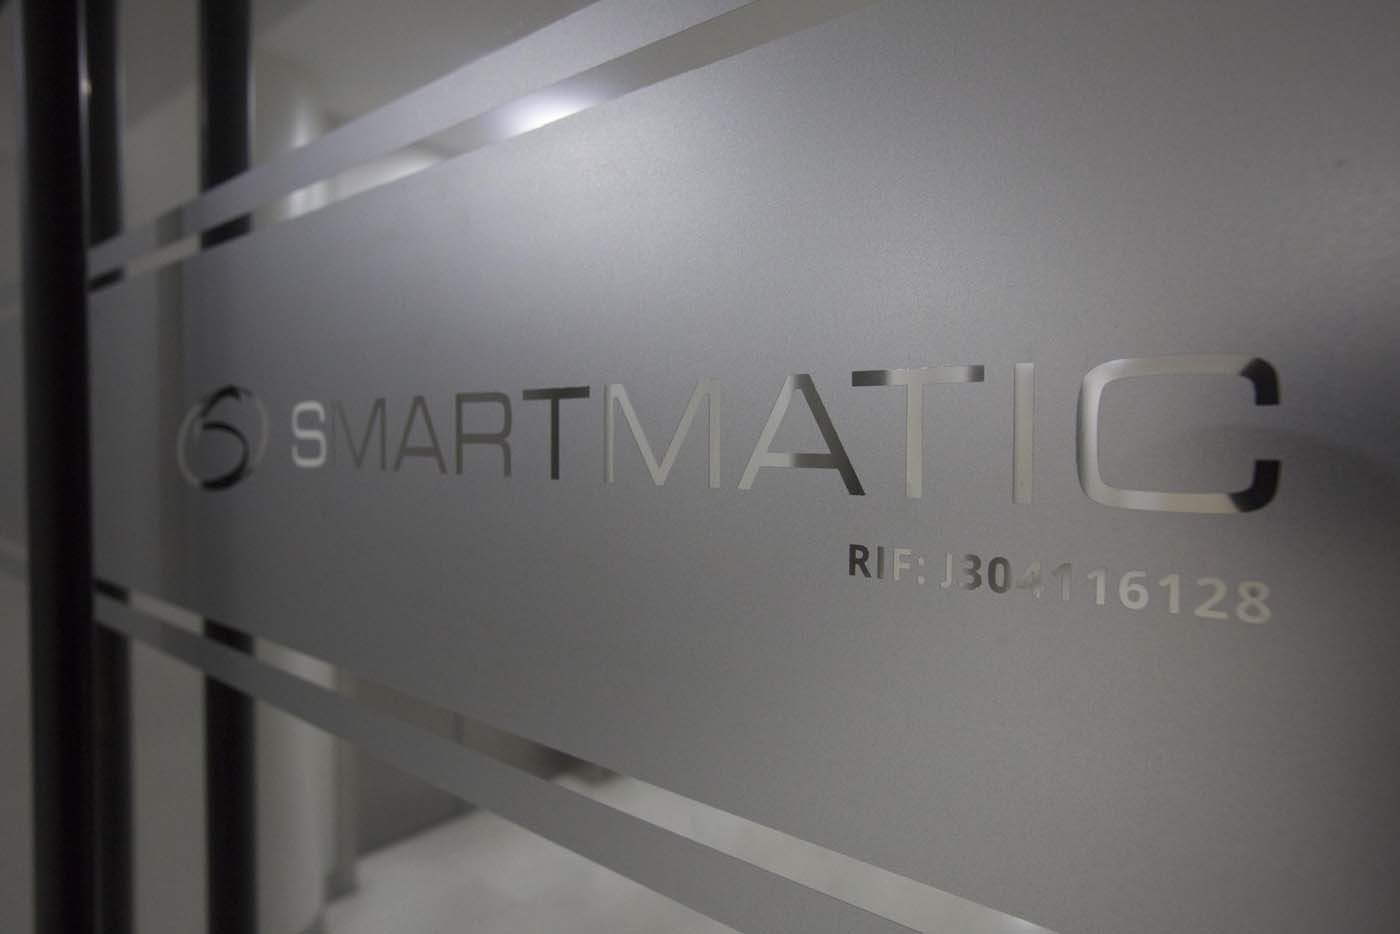 Smartmatic aclara que no participó en comicios regionales del #15Oct (comunicado)